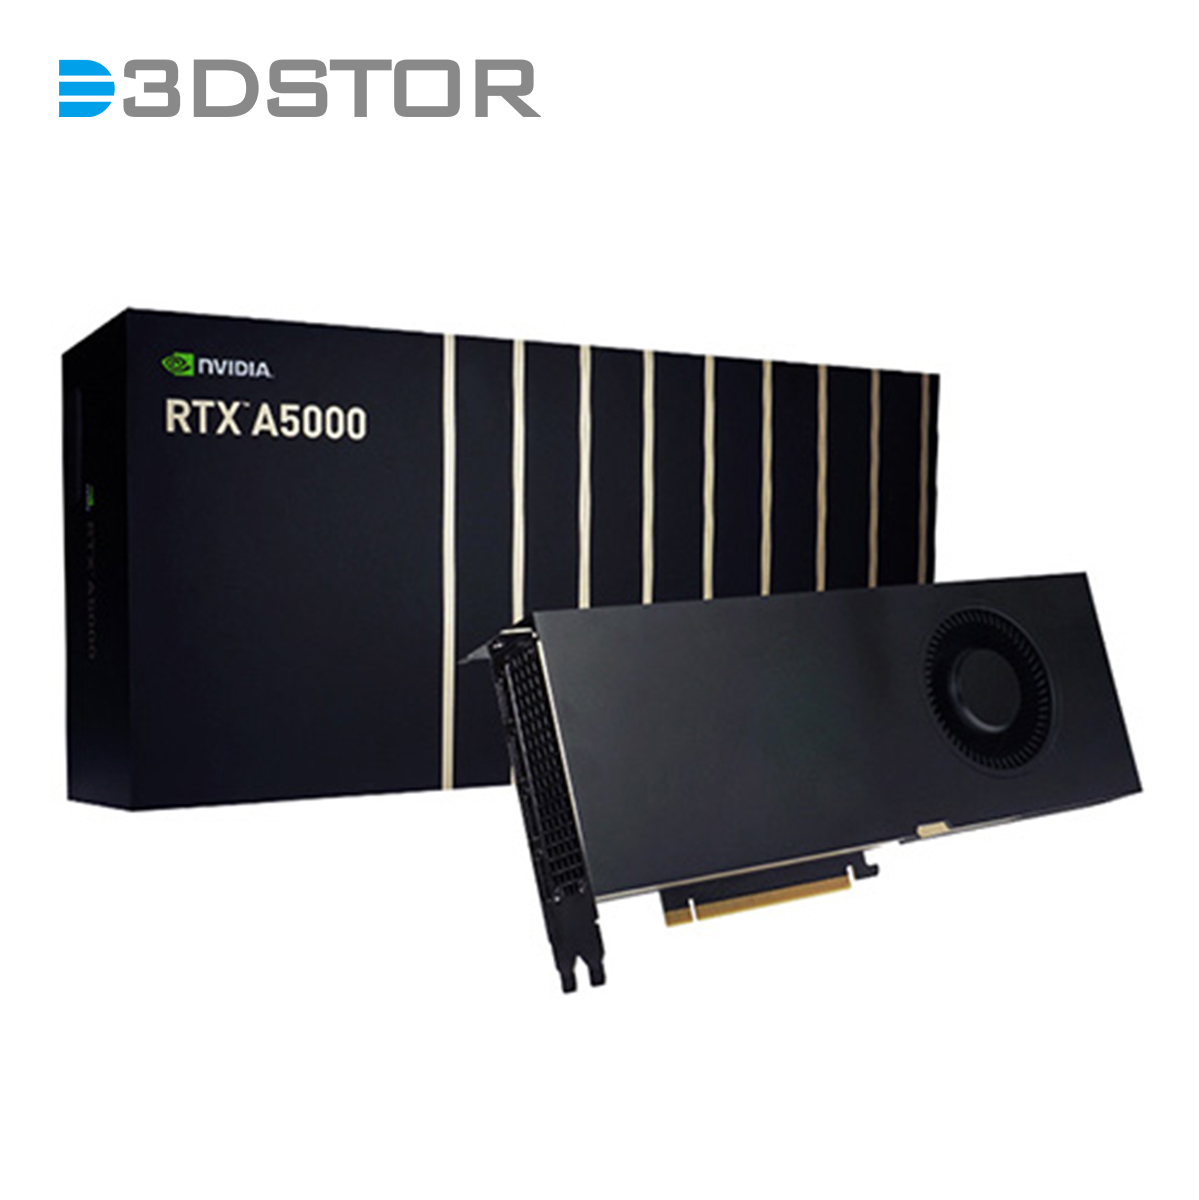 NVIDIA RTX A5000 - 3DSTOR Technology Co. Ltd